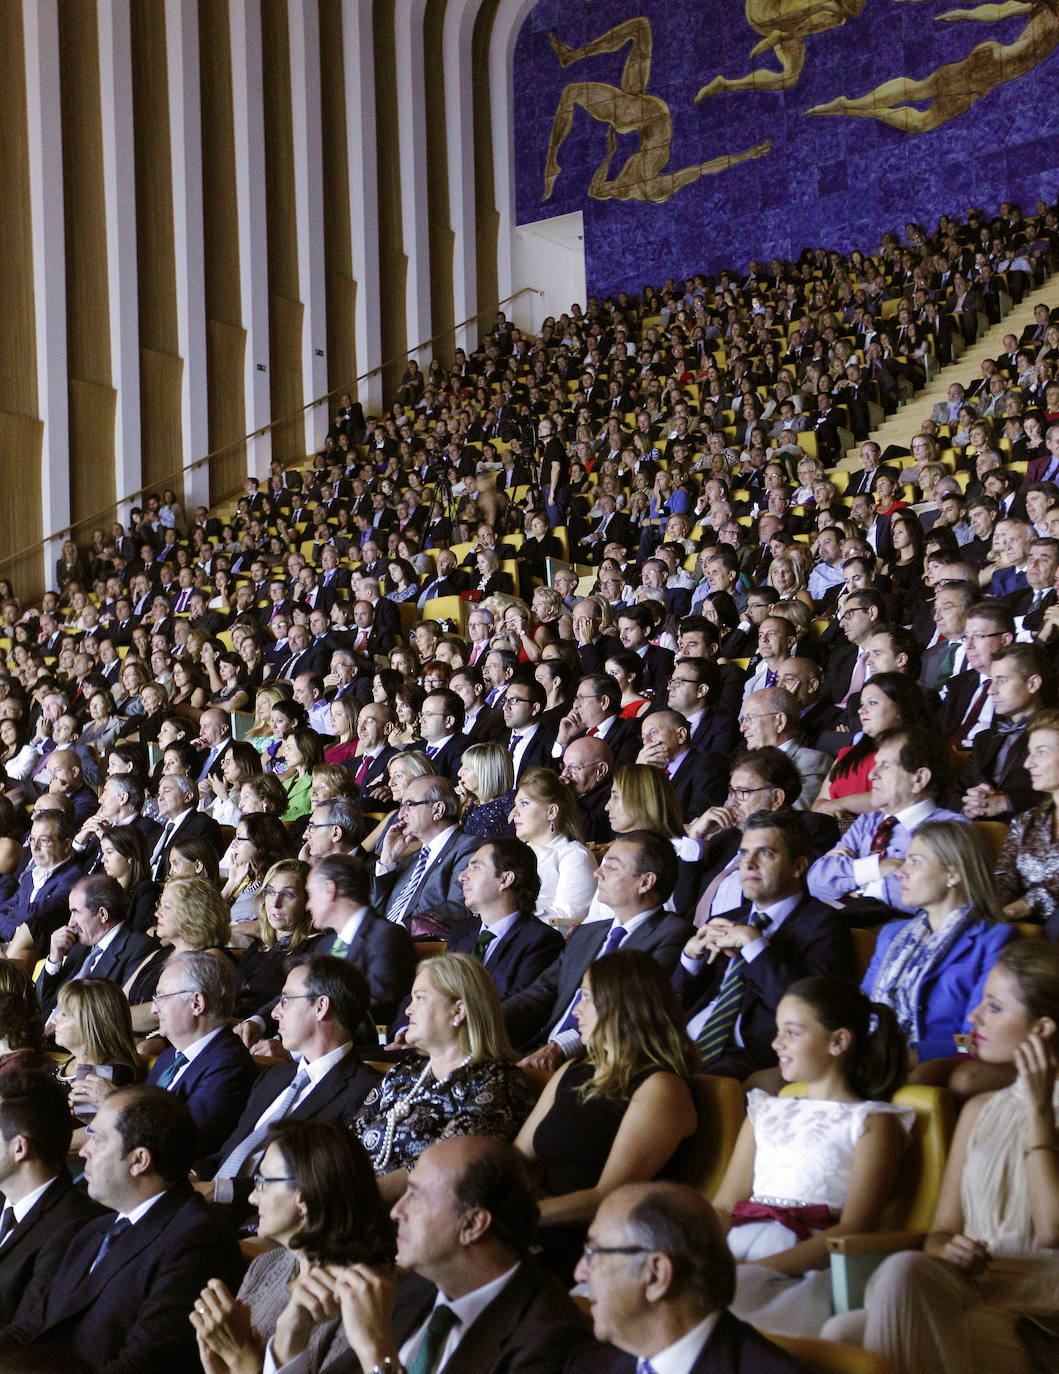 2014. El público llena la sala Auditori del Palau de Les Arts Reina Sofía.